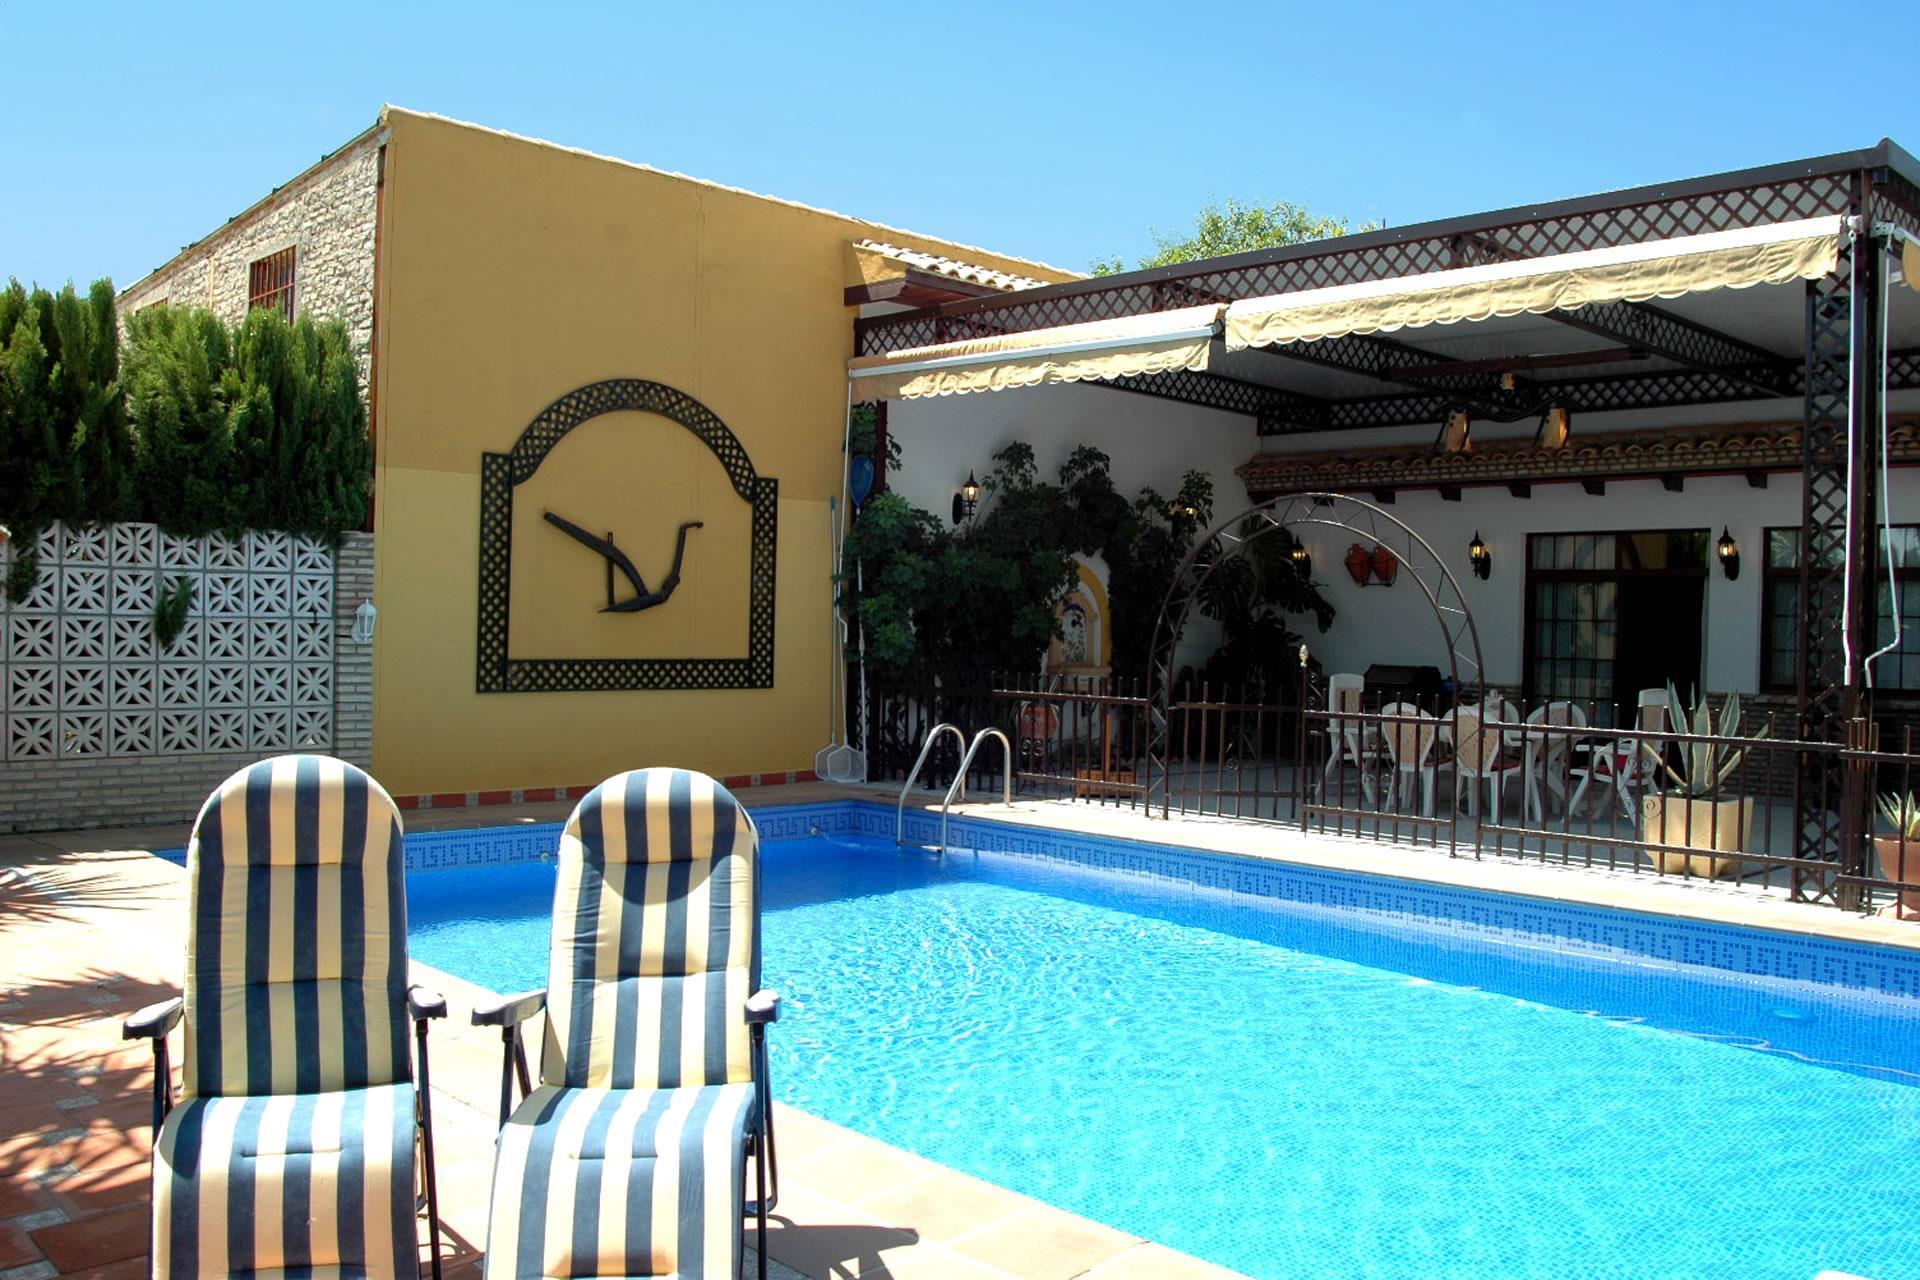 Ferienhaus mit Privatpool für 4 Personen ca.  Ferienhaus in Spanien